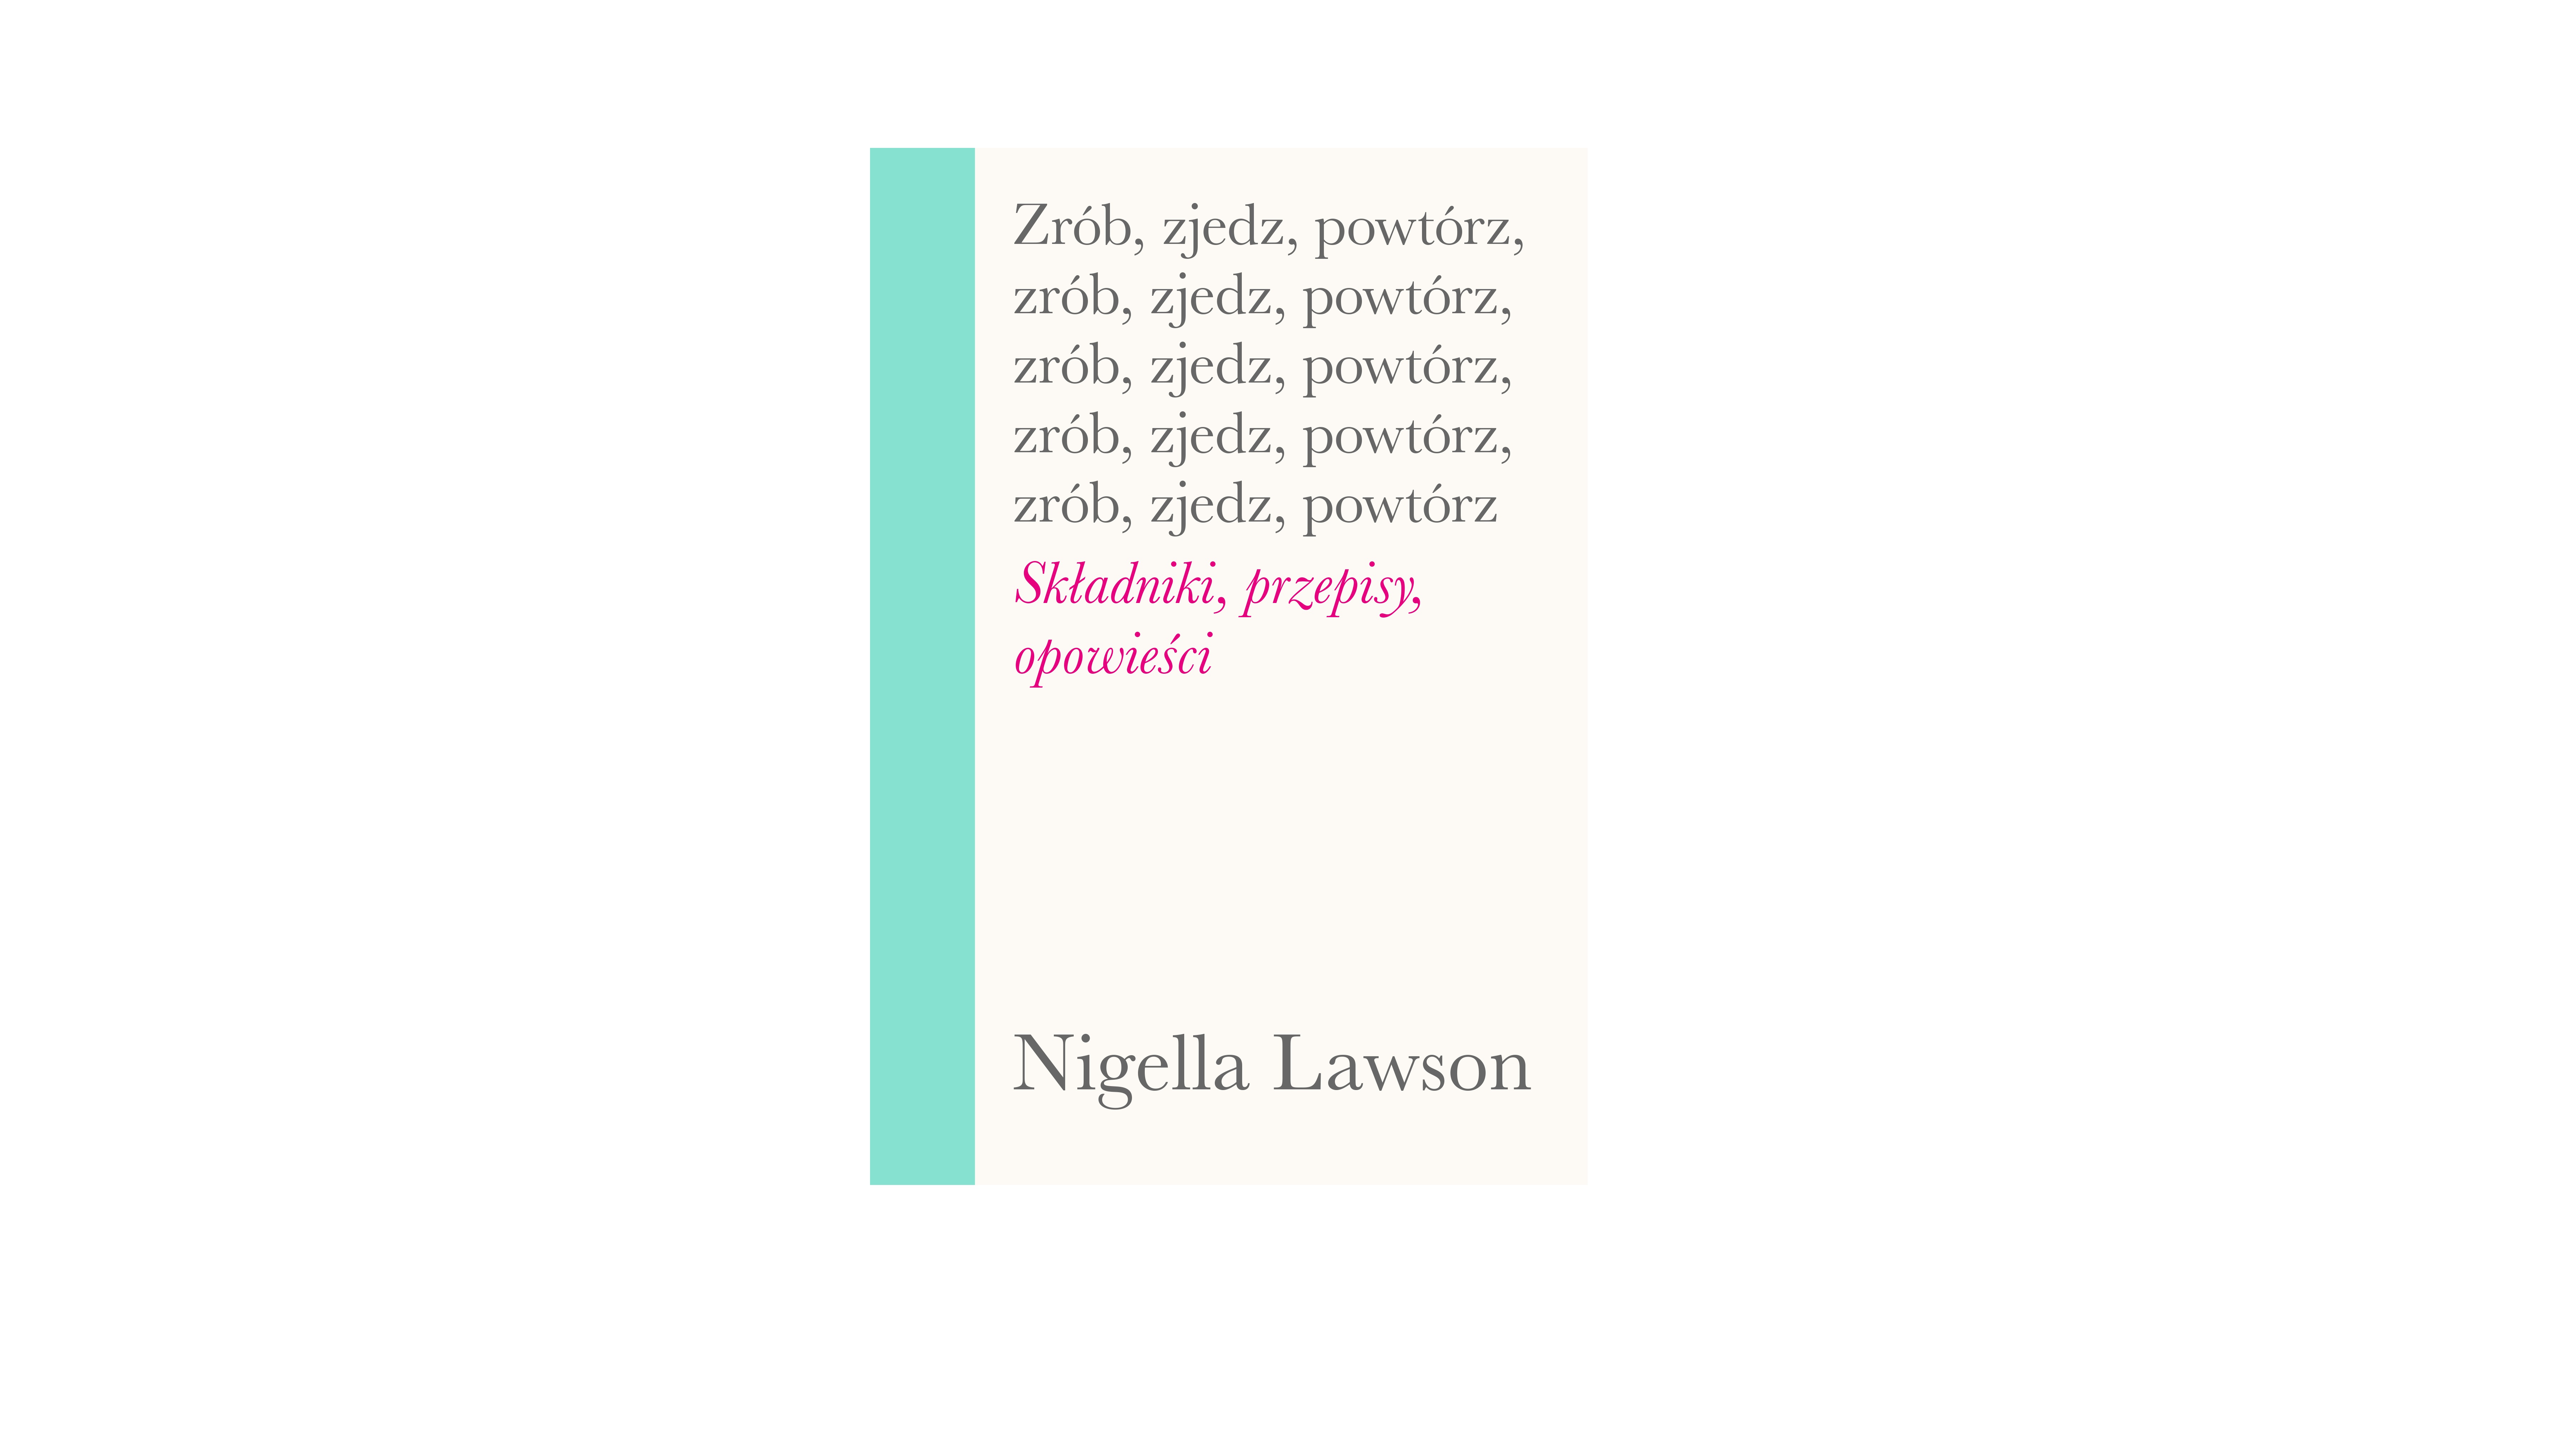 Nigella Lawson powraca! Po trzech latach przerwy nowa książka – „Zrób, zjedz, powtórz“ wkrótce w księgarniach